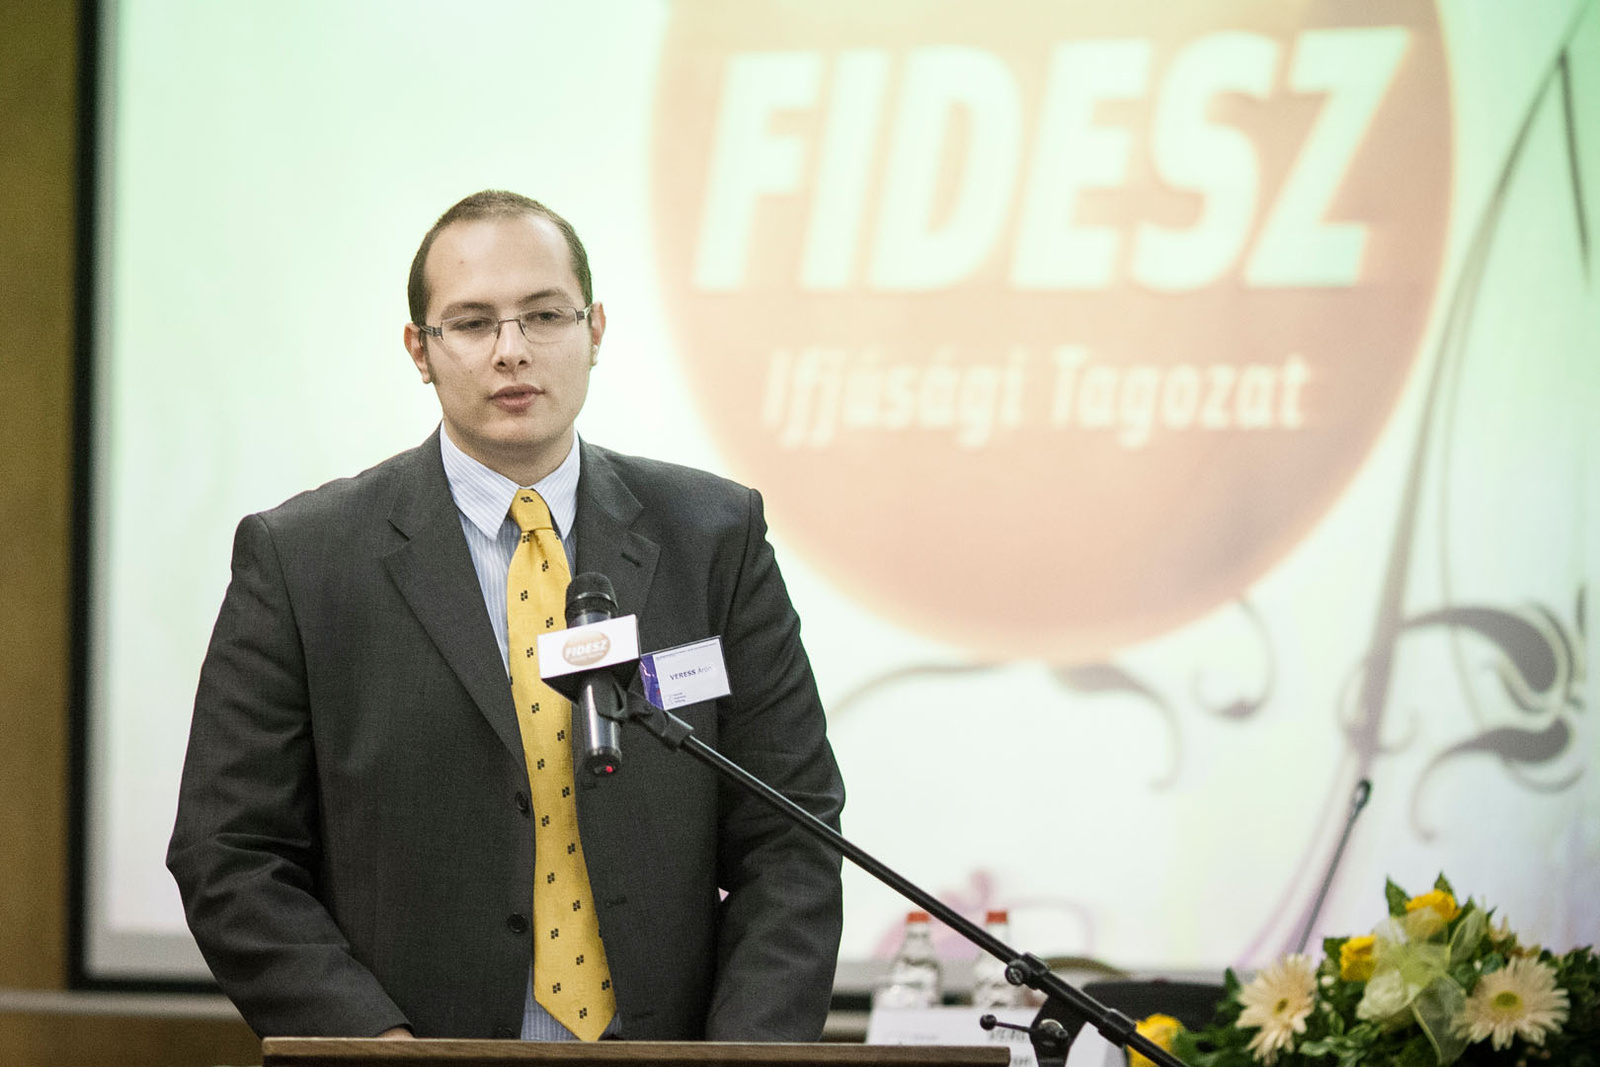 Veress Áron, a Fidesz Ifjúsági Tagozatának elnöke